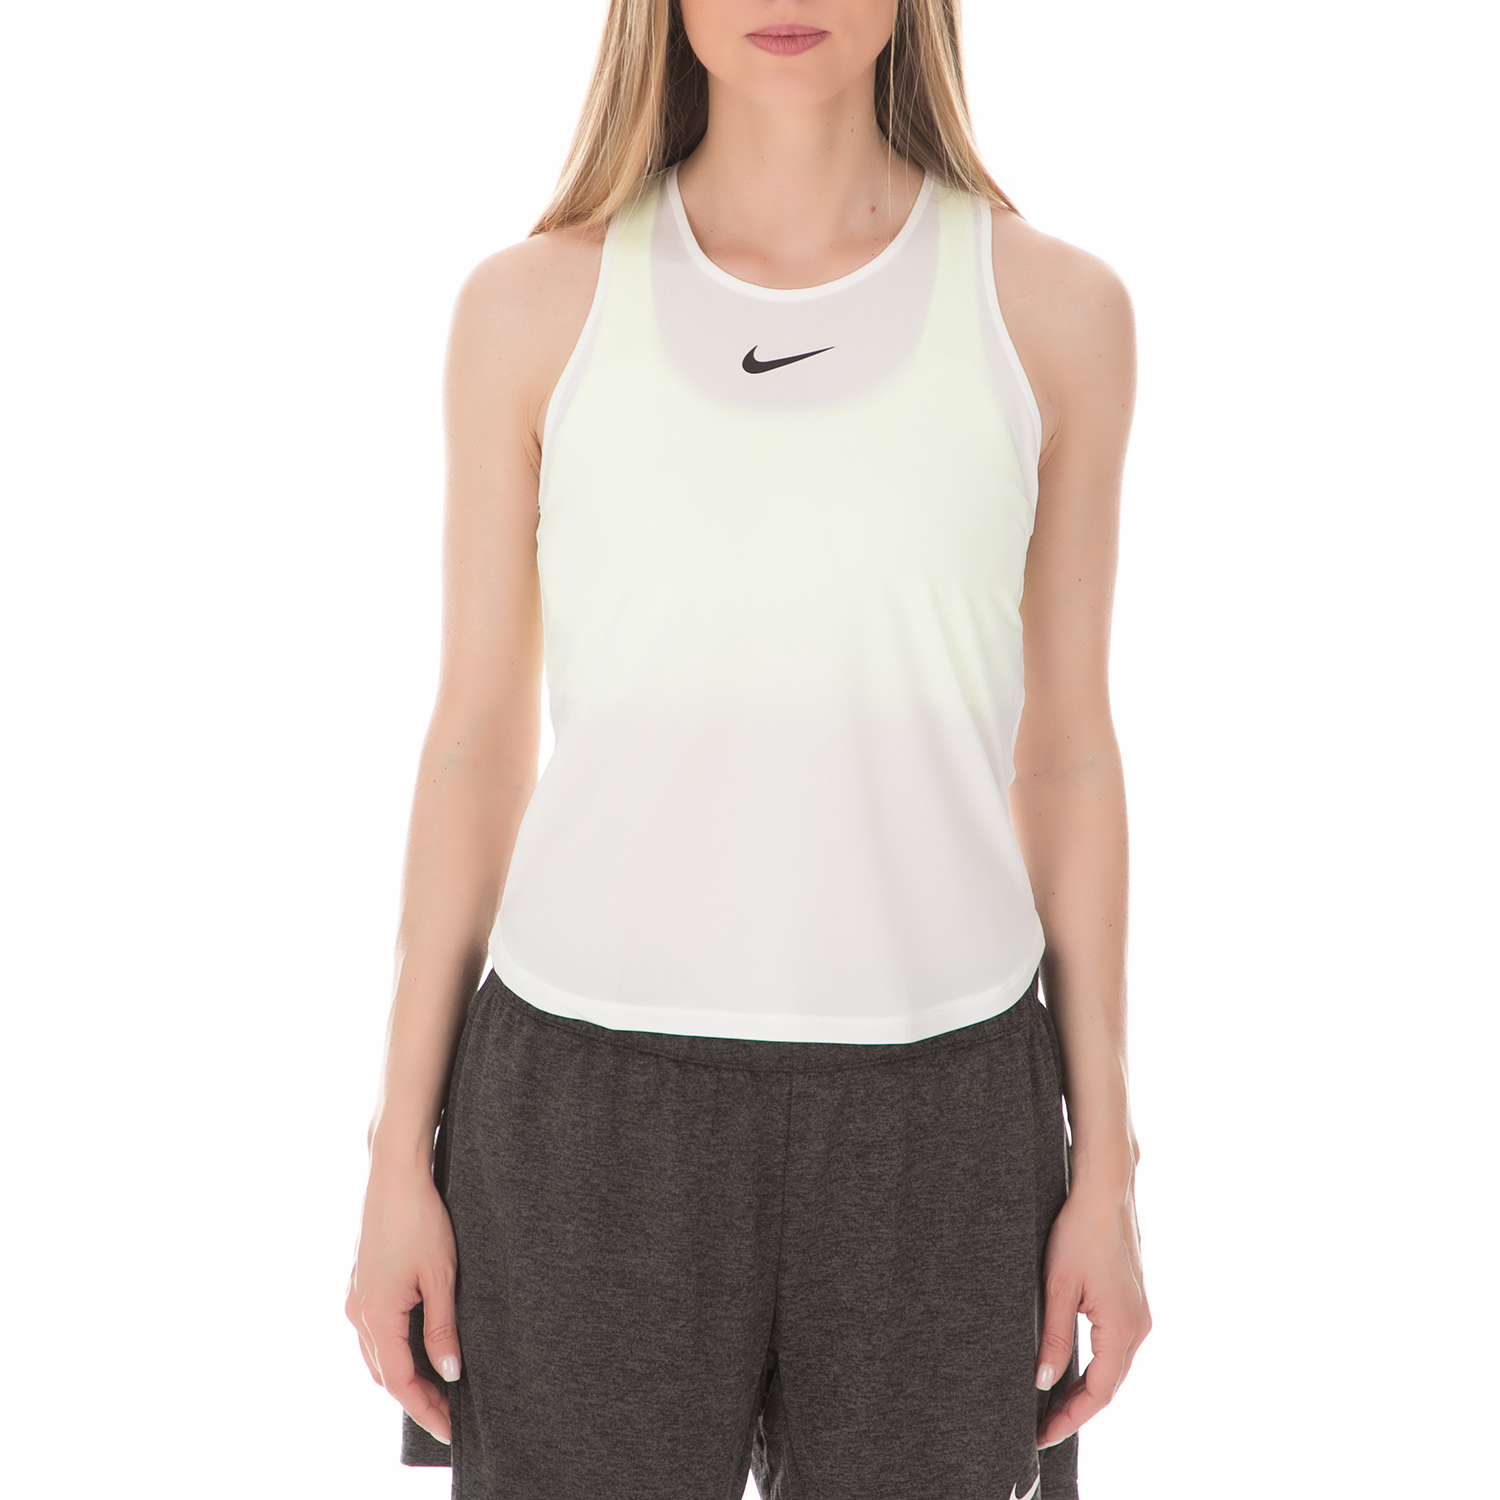 Γυναικεία/Ρούχα/Αθλητικά/T-shirt-Τοπ NIKE - Γυναικείο αθλητικό φανελάκι Nike Dry Slam λευκό